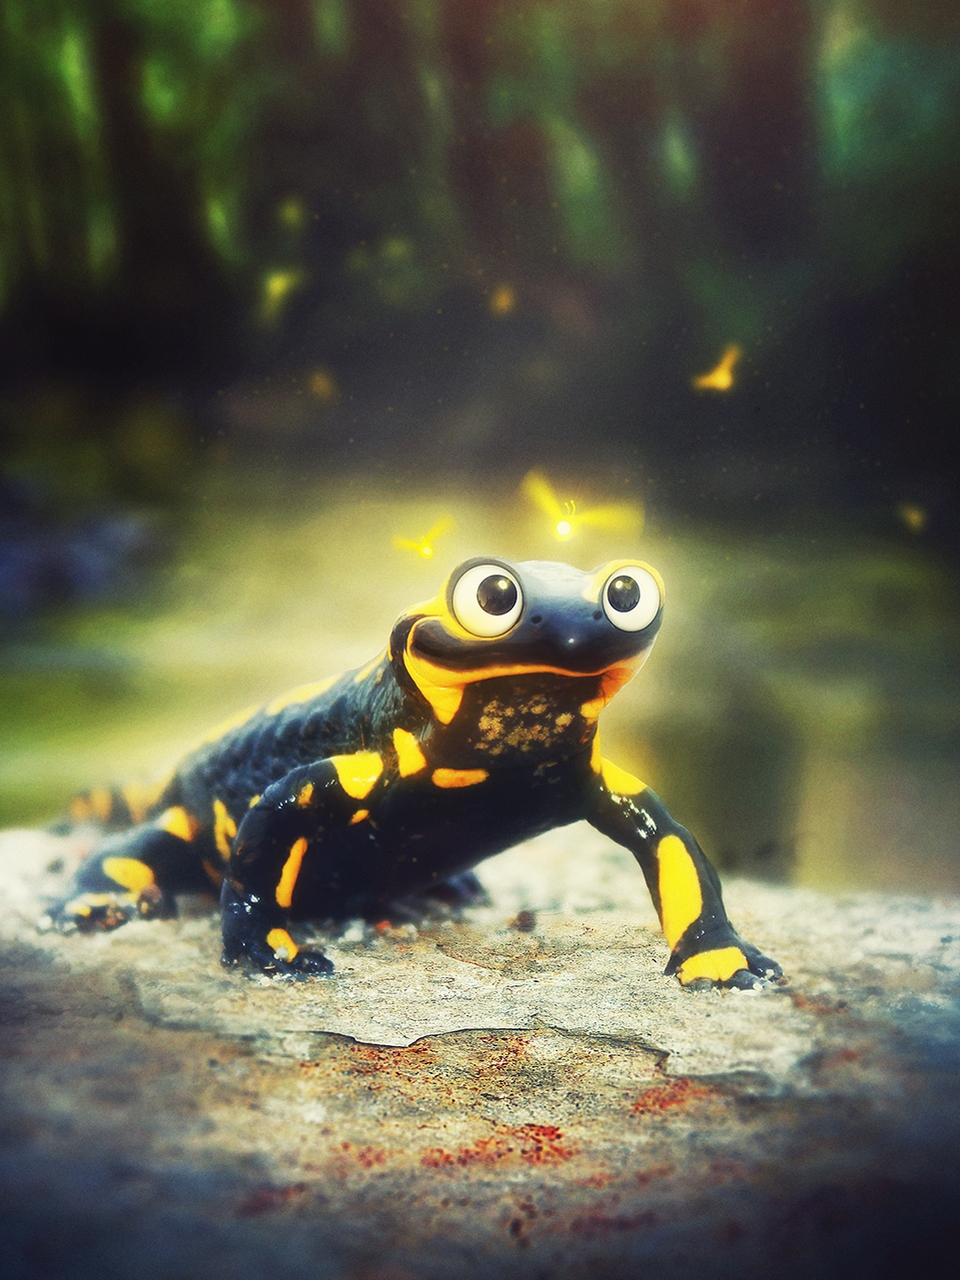 Image: Salamander, eyes, torso, blur, bokeh, sitting, stone